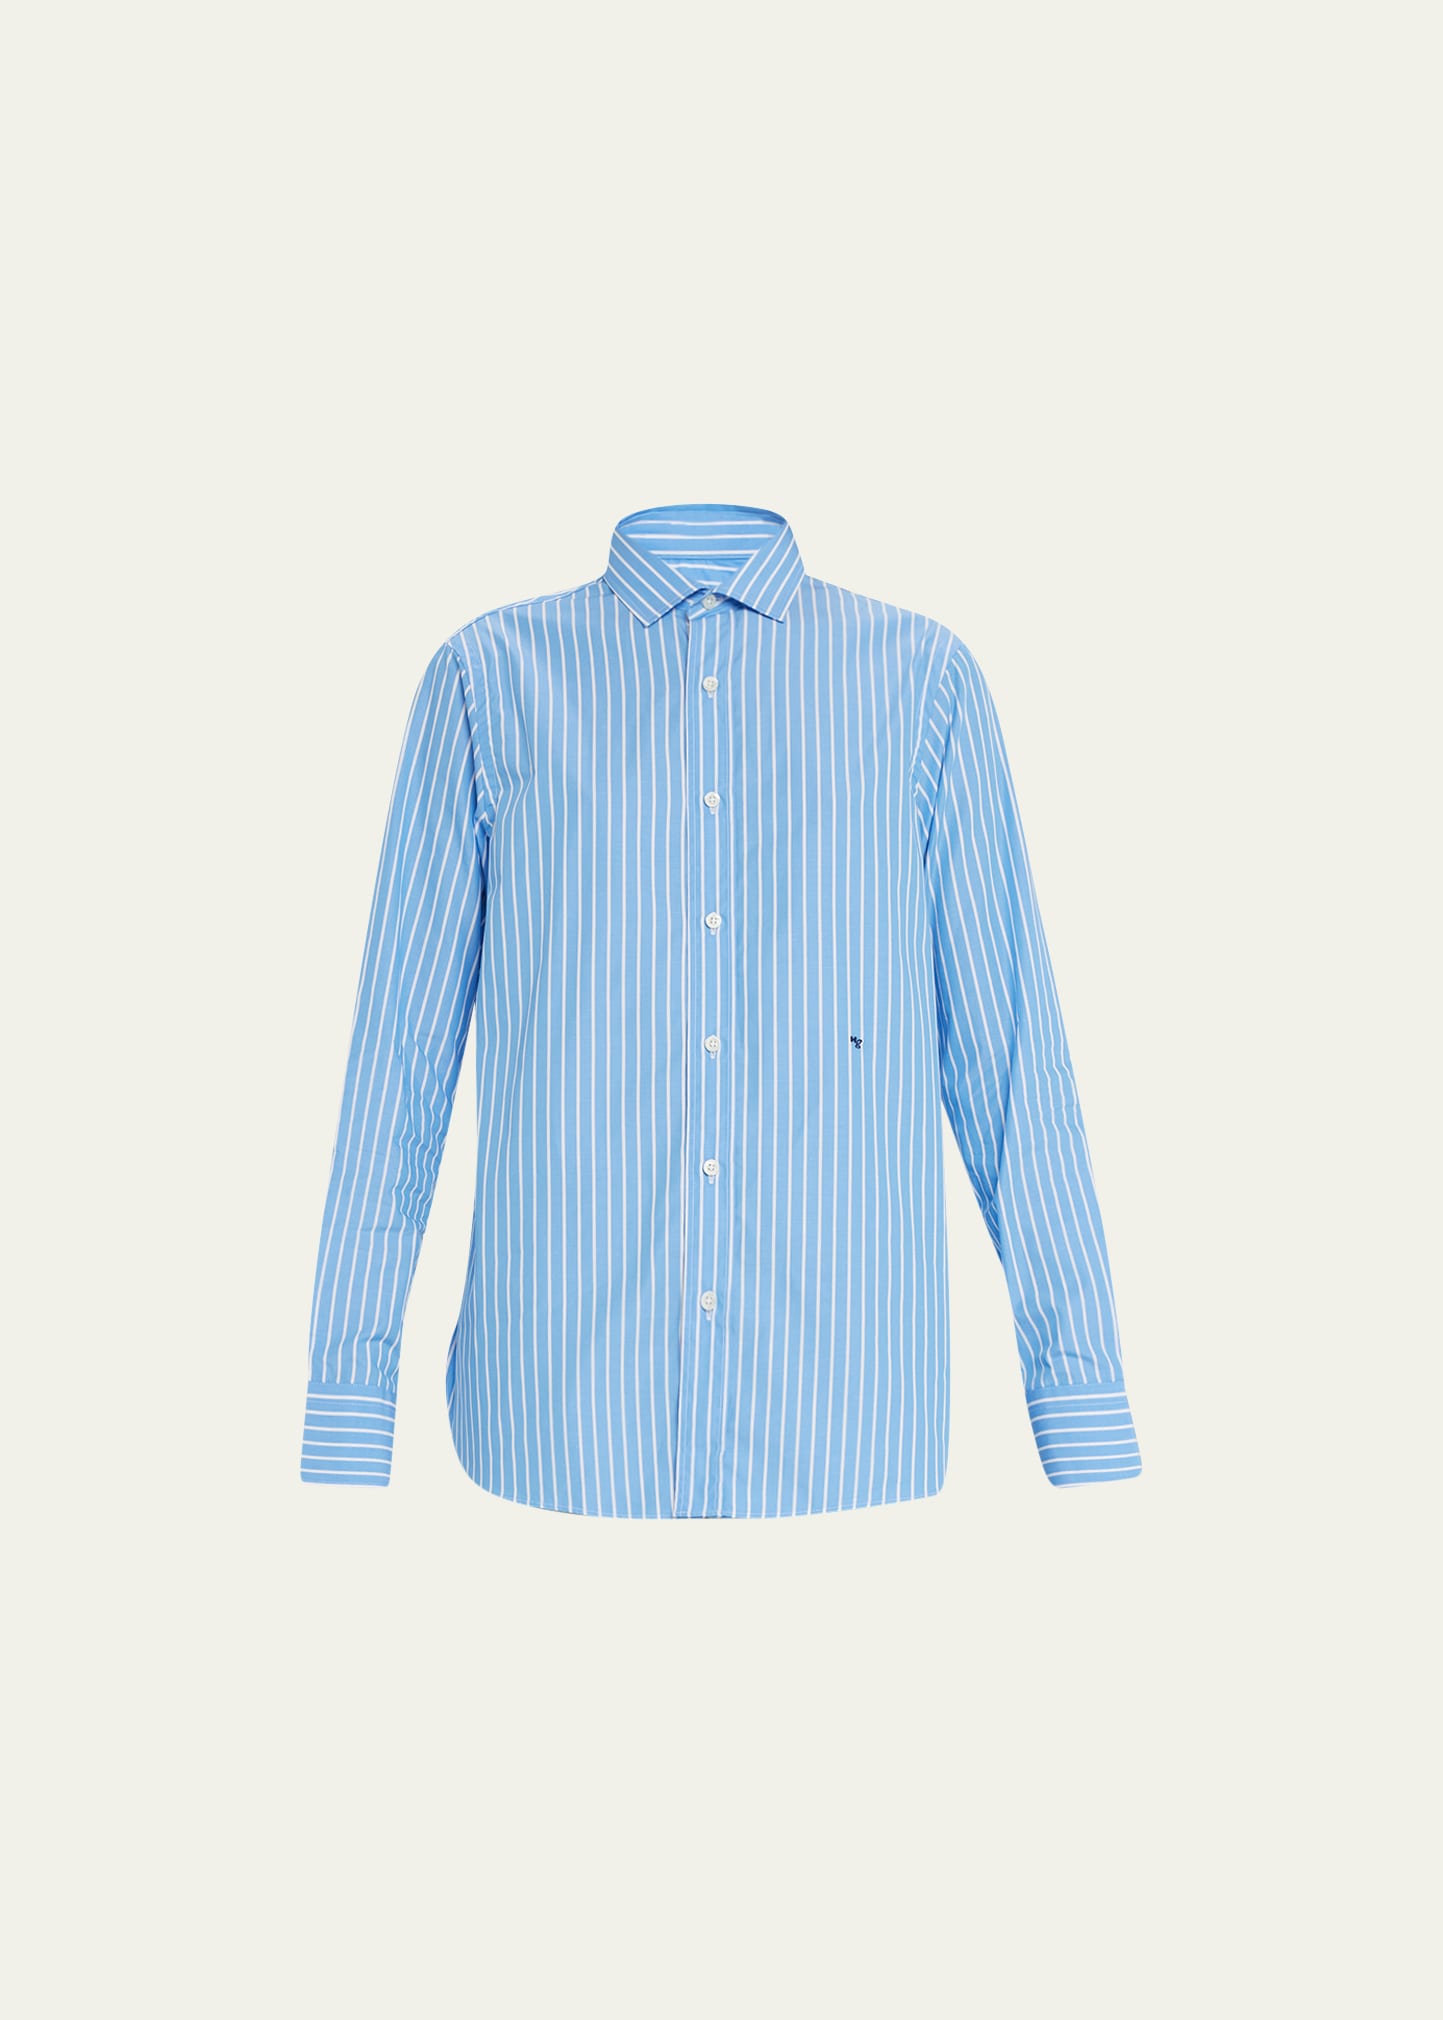 Hommegirls Stripe Classic Button-up Cotton Shirt